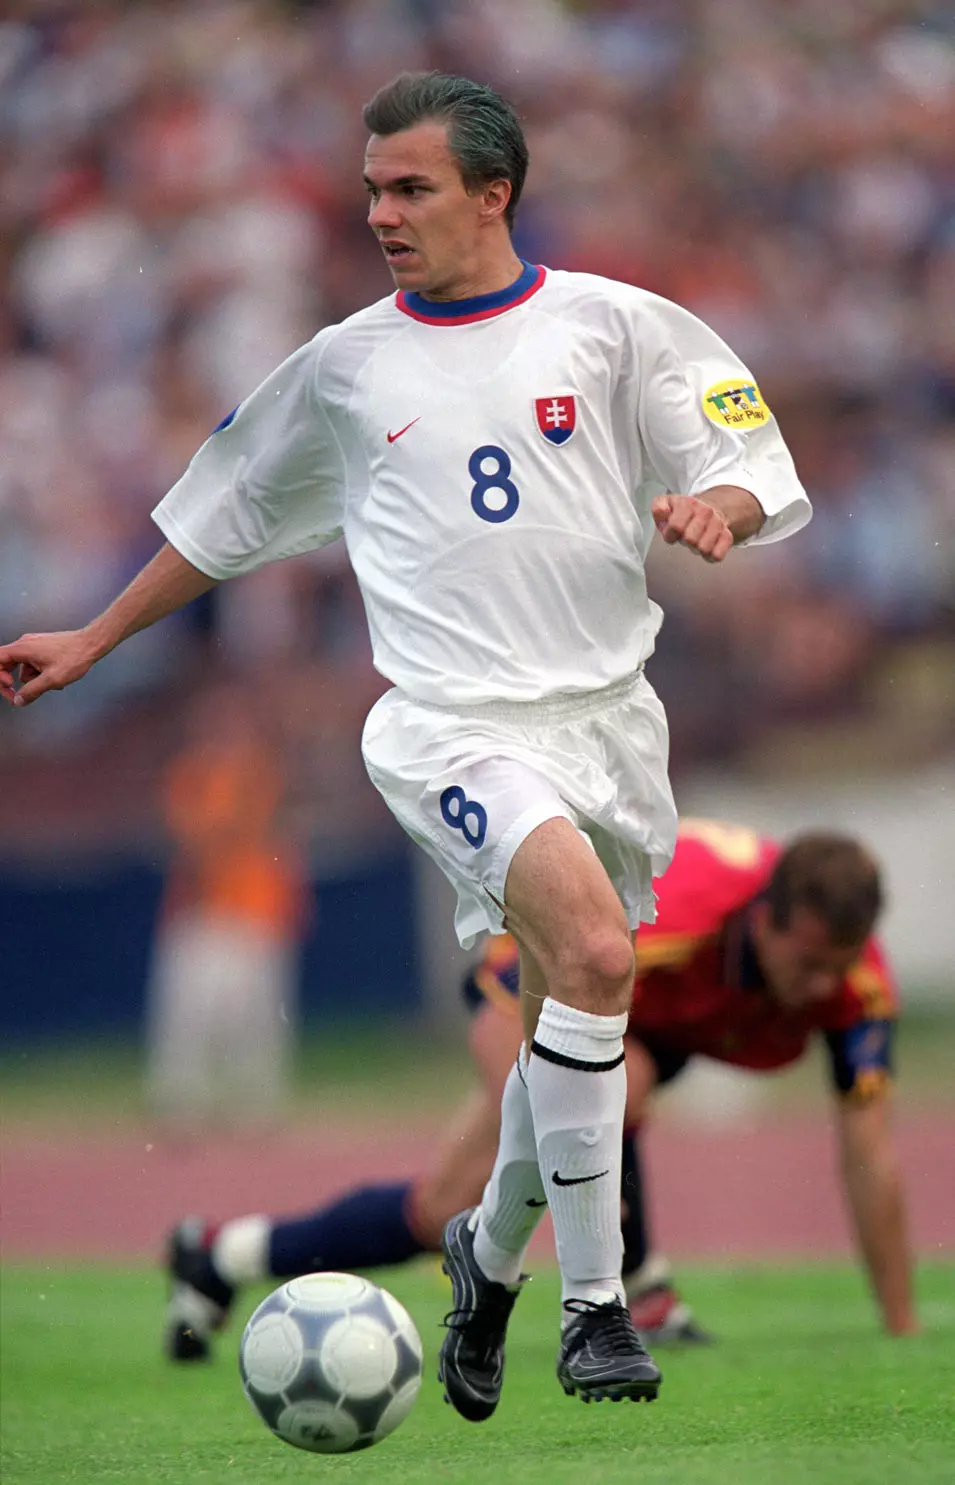 זילארד נמת שחקן נבחרת סלובקיה הצעירה ביורו 2000